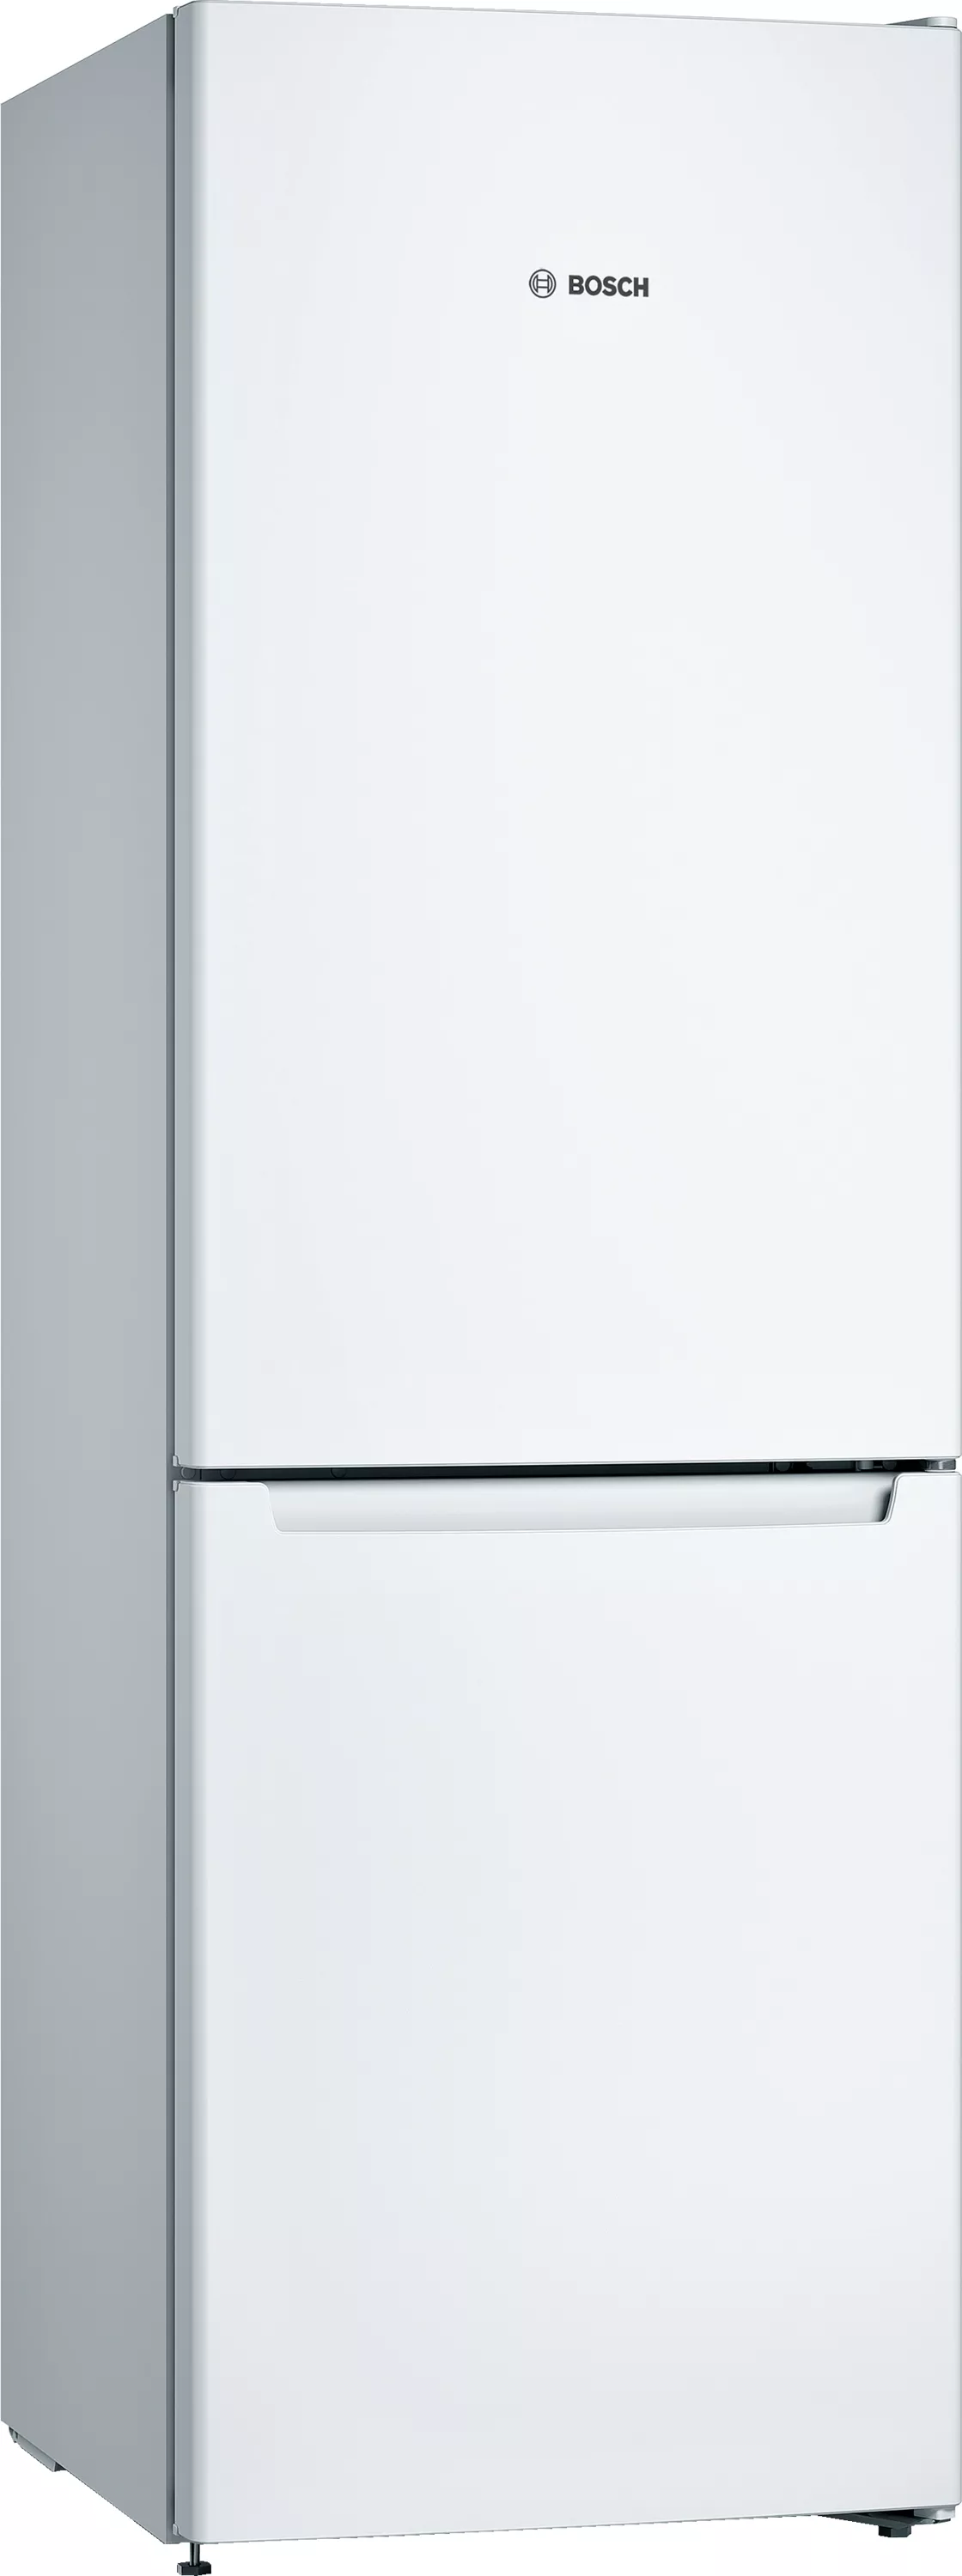 Bosch Serie 2, Freistehende Kühl-Gefrier-Kombination mit Gefrierbereich  unten, 186 x 60 cm, Weiß, KGN36NWEA | 4242005196708